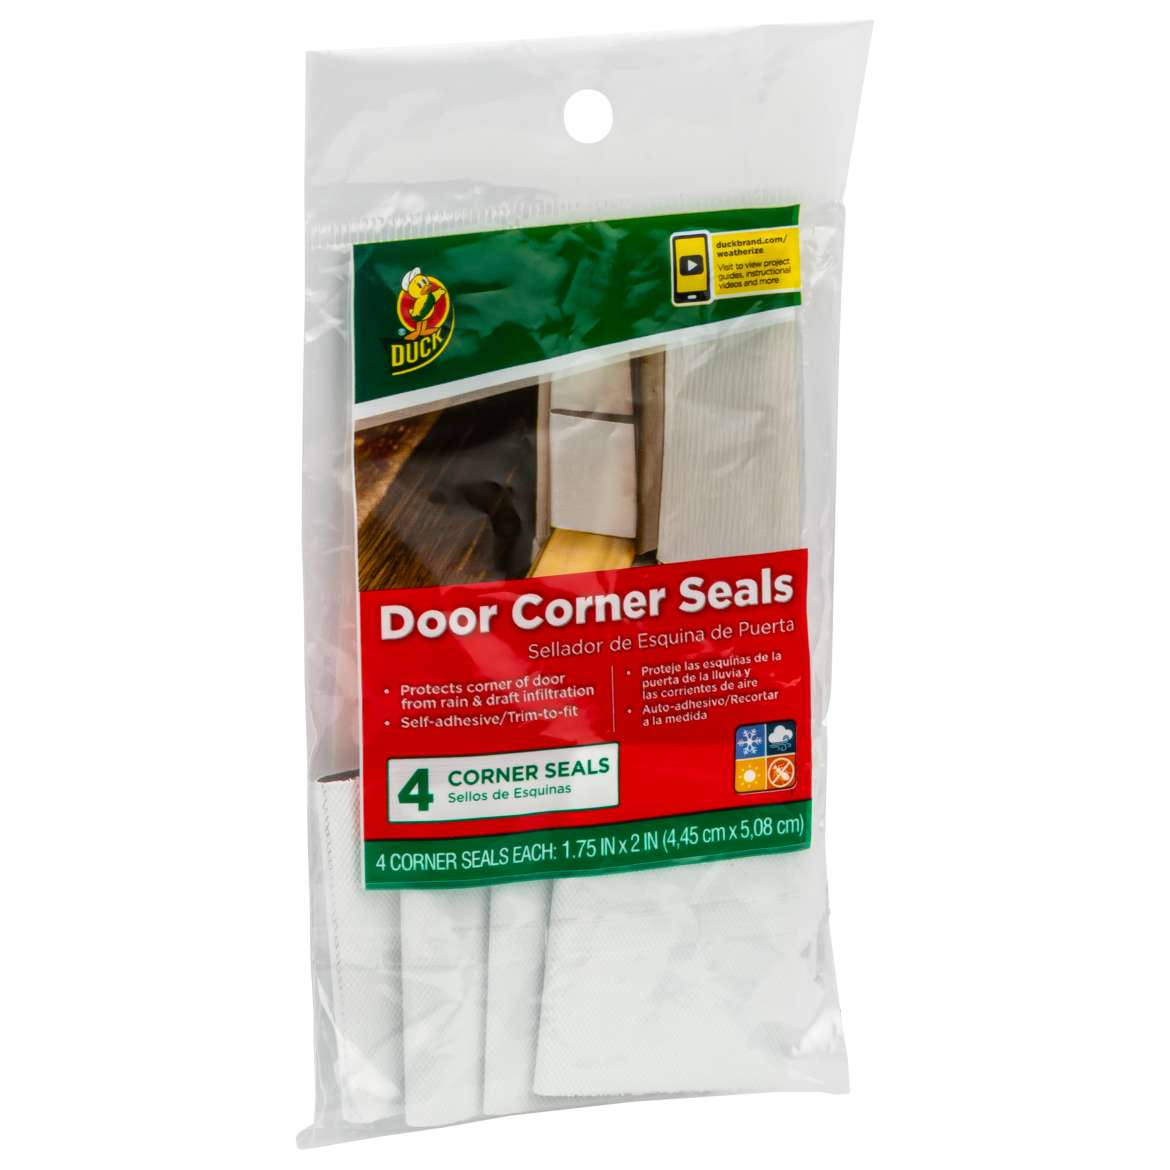 Duck® Brand Door Corner Seals Image